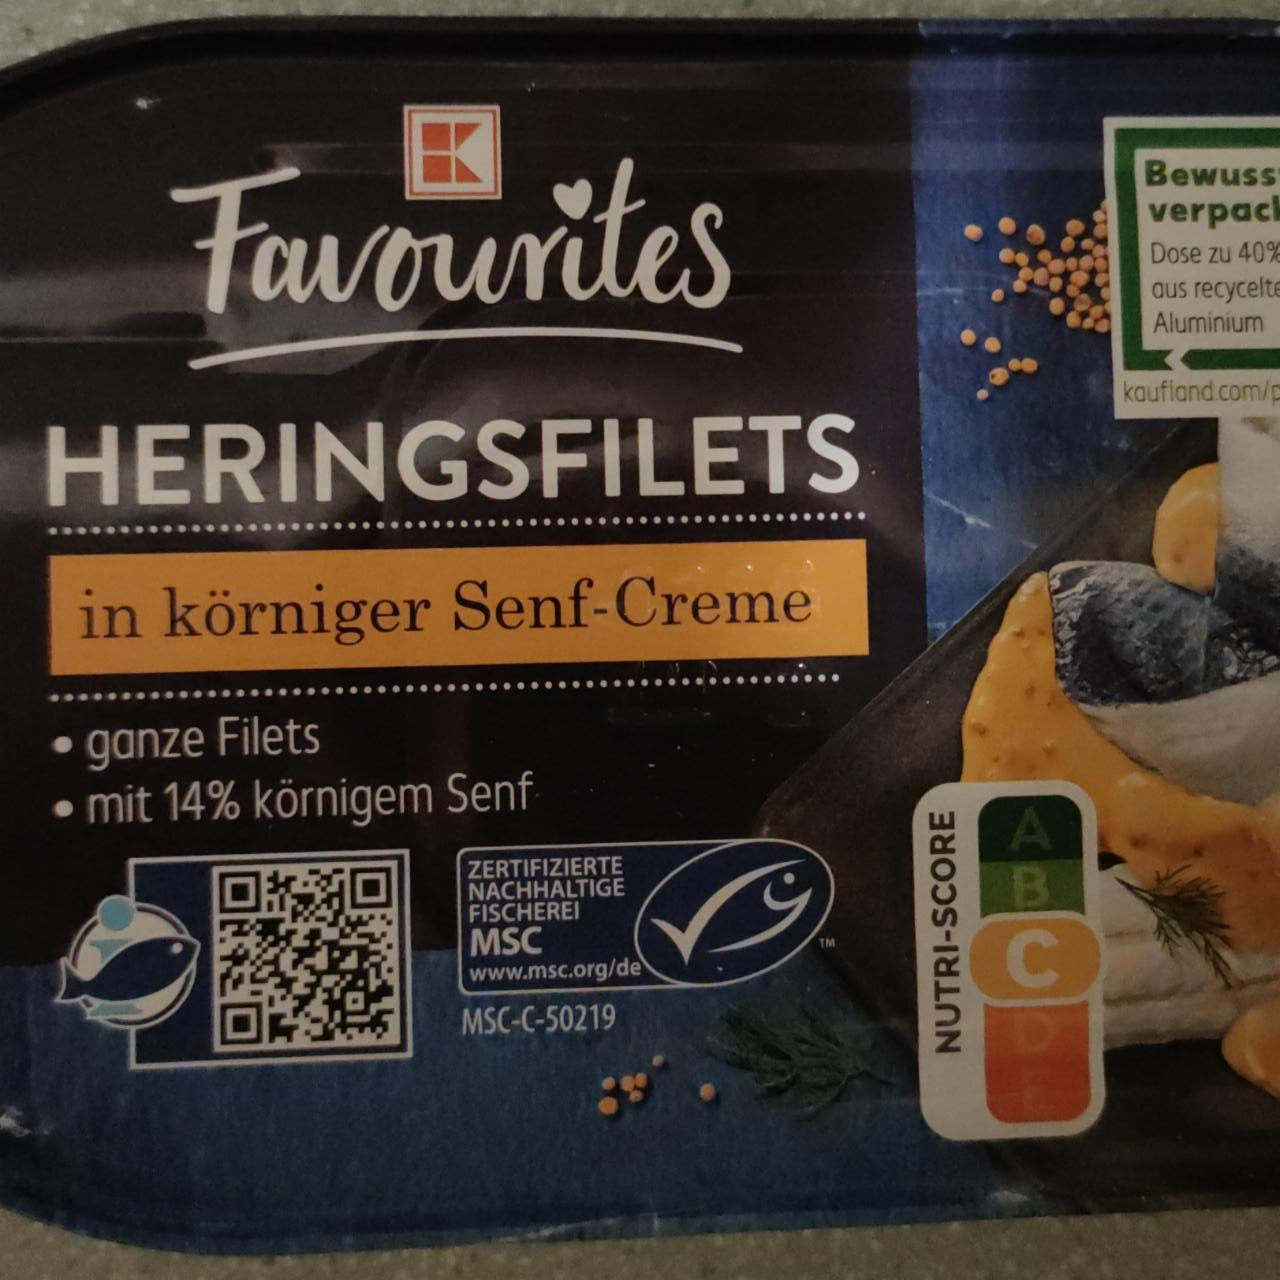 Fotografie - Heringsfilets in korniger Senf-Creme K-Favourites